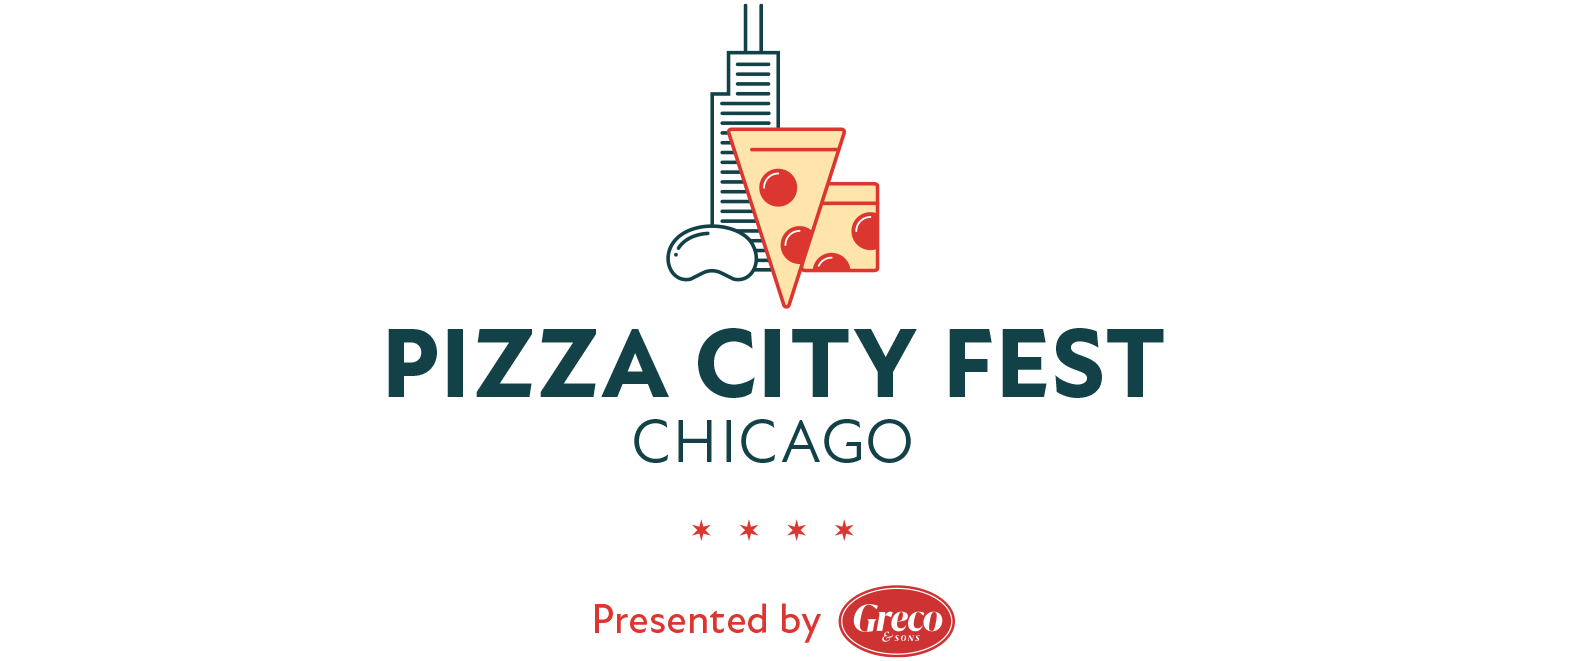 Chicago Pizza City Fest